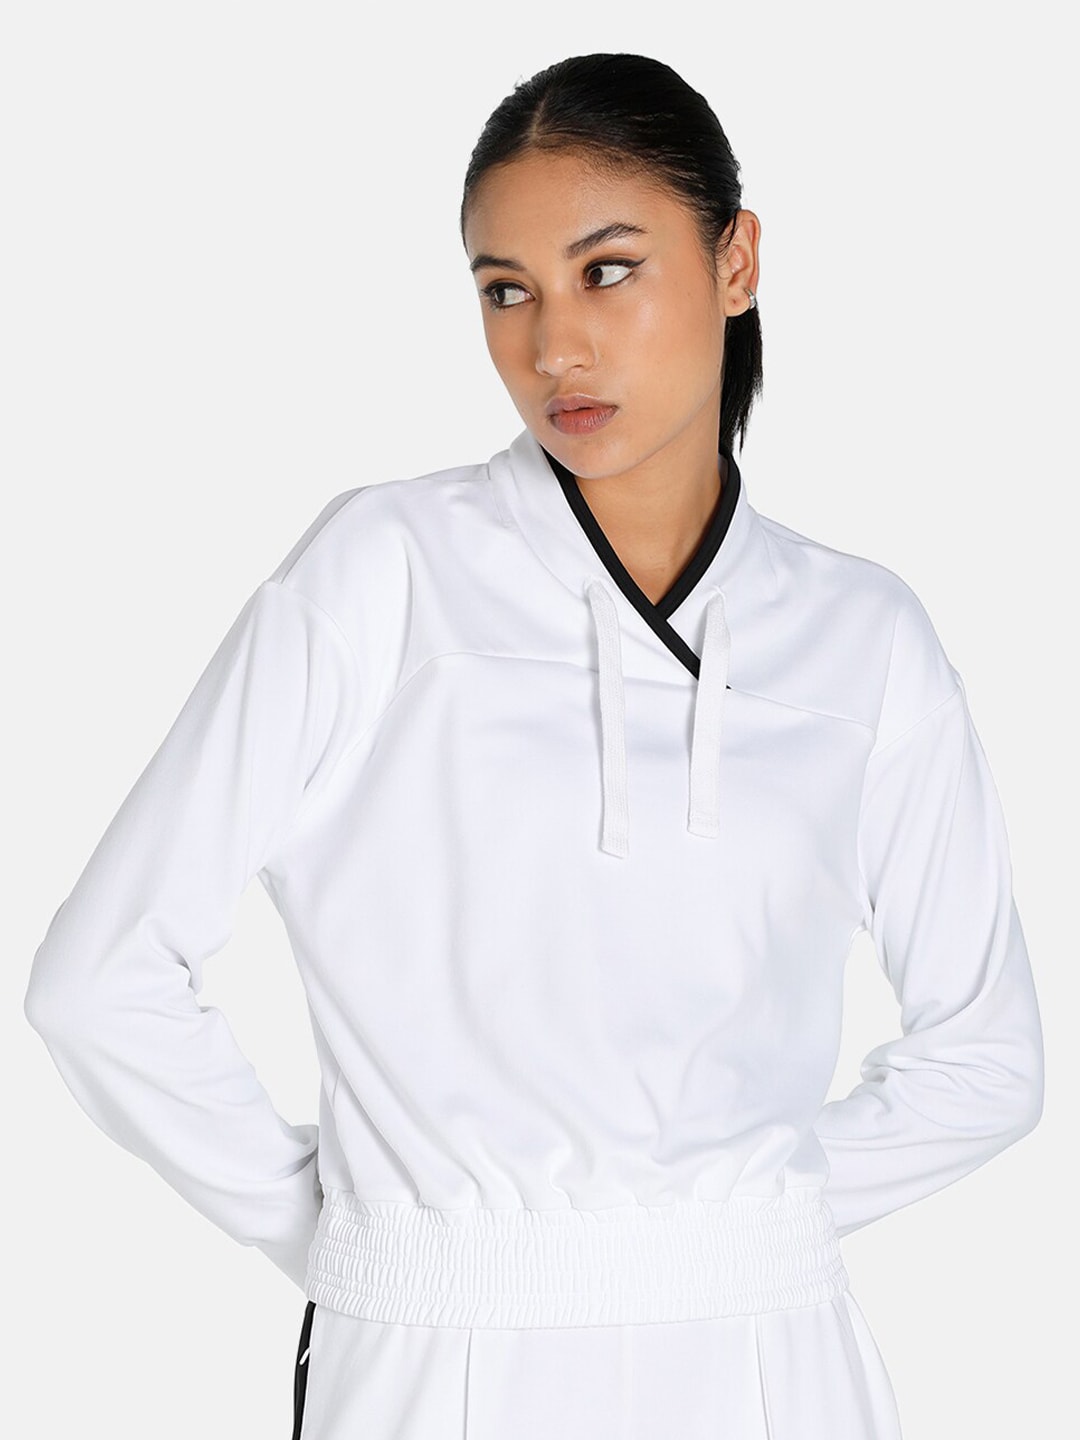 Puma Woman White Training Sweatshirt Price in India